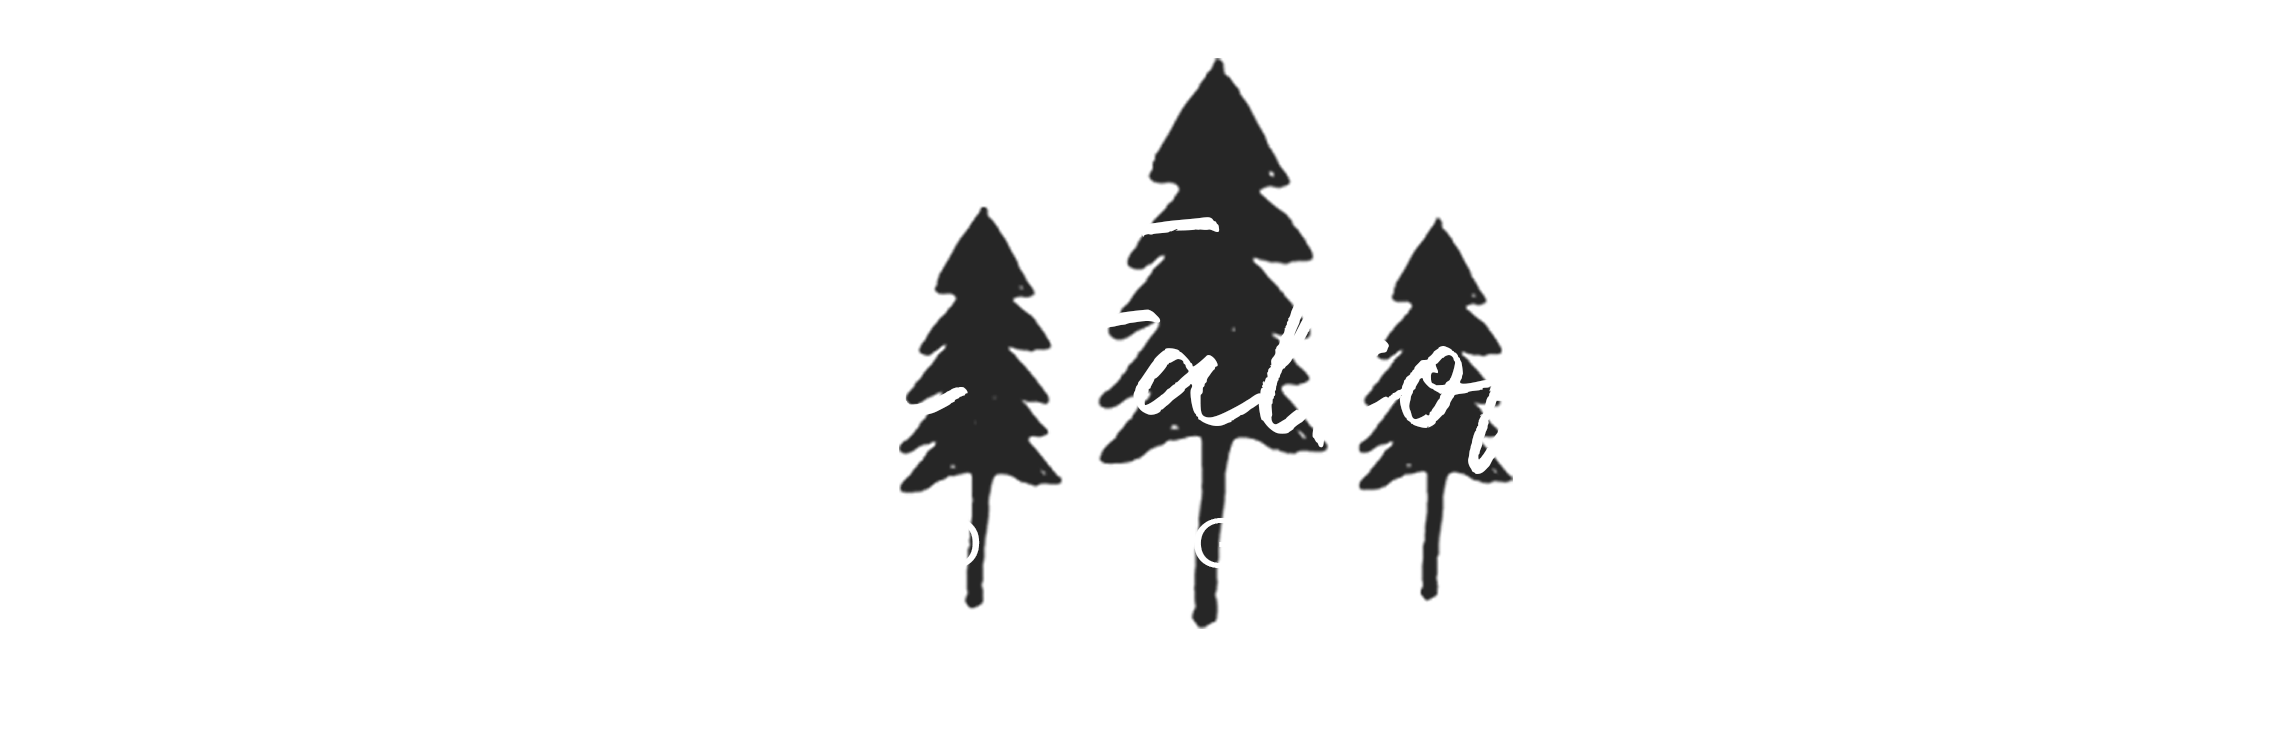 Jen Falkofske Photography